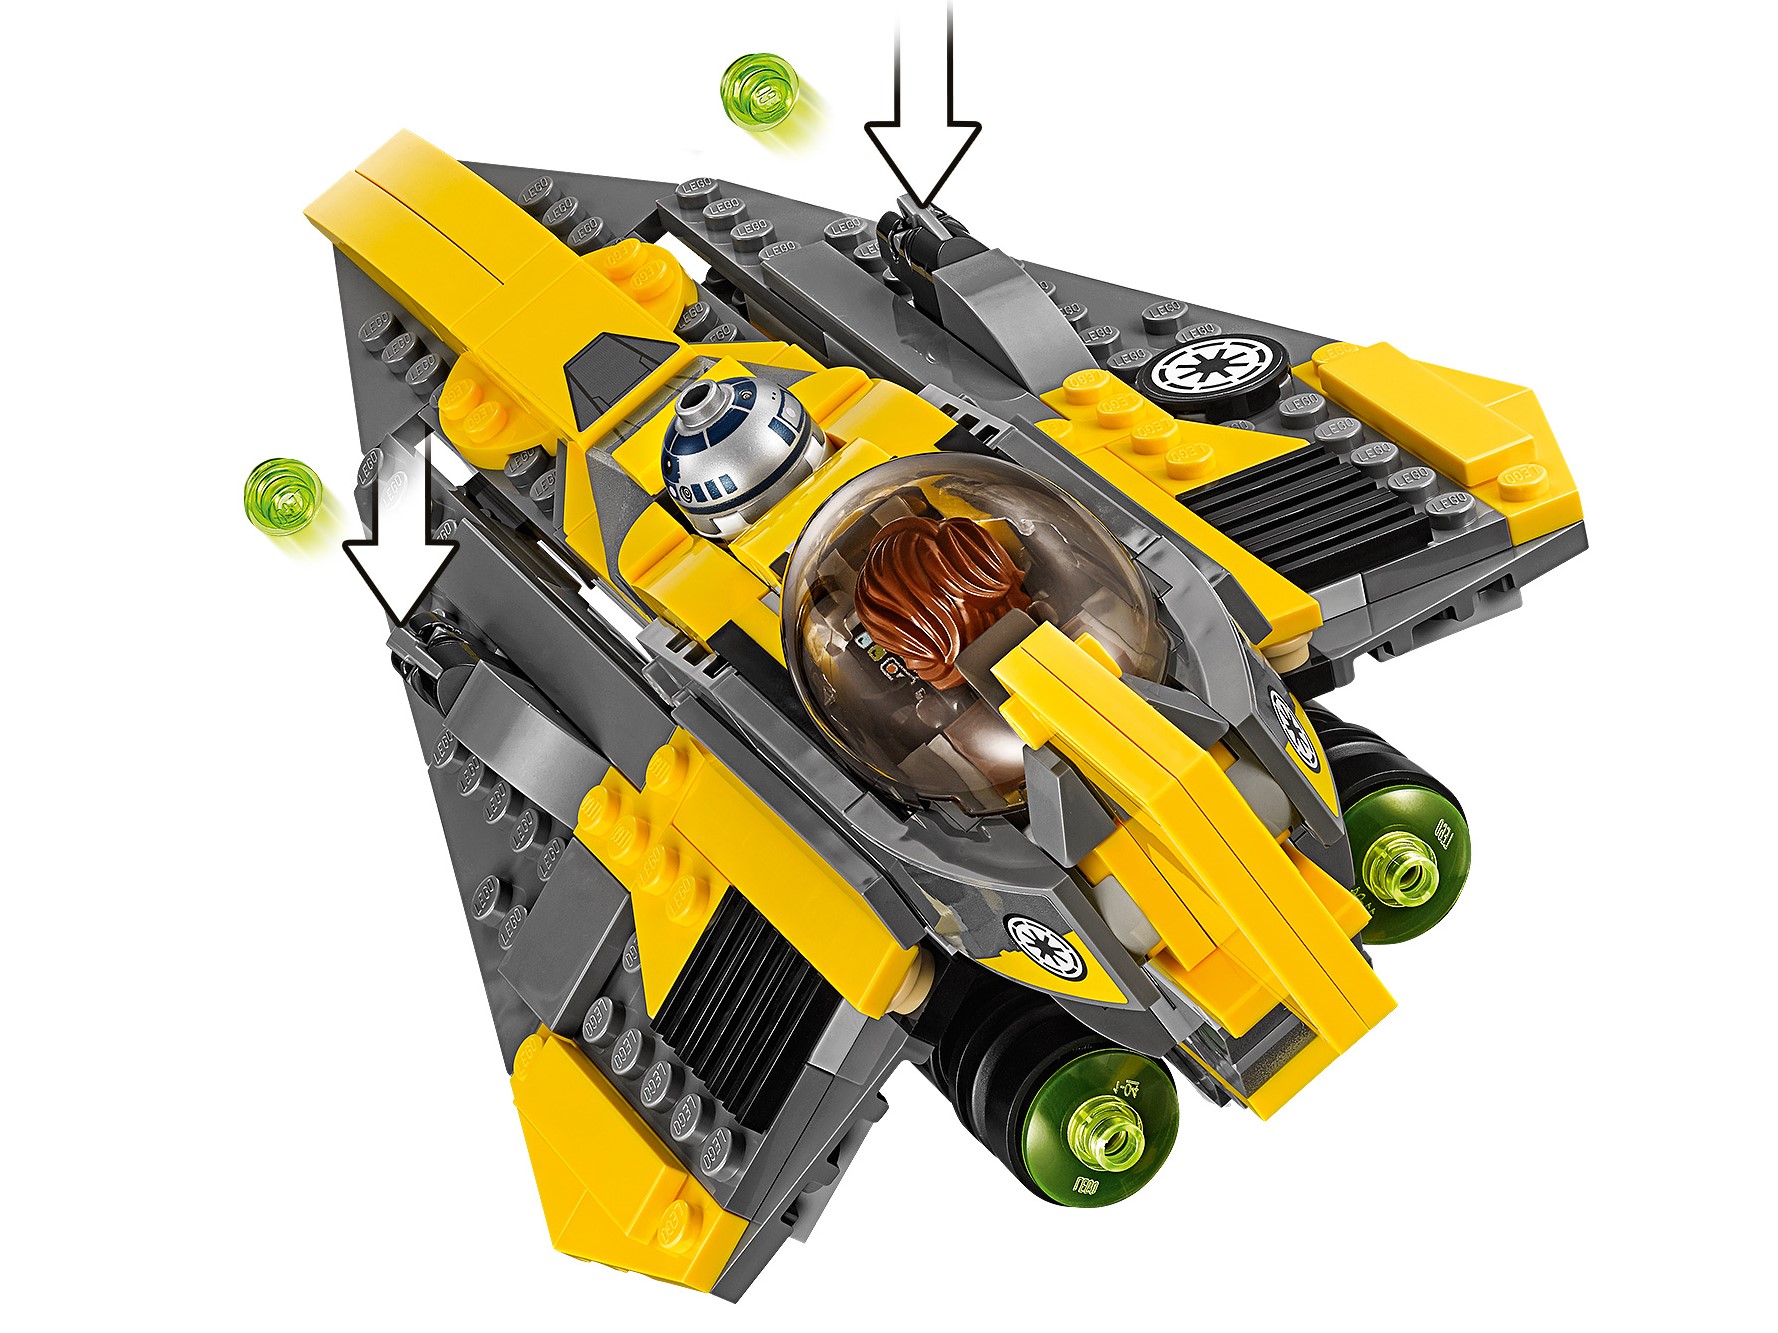 Lego 75214 LEGO Star Wars Anakin's Jedi Starfighter 75214 Building Kit 247 Piece